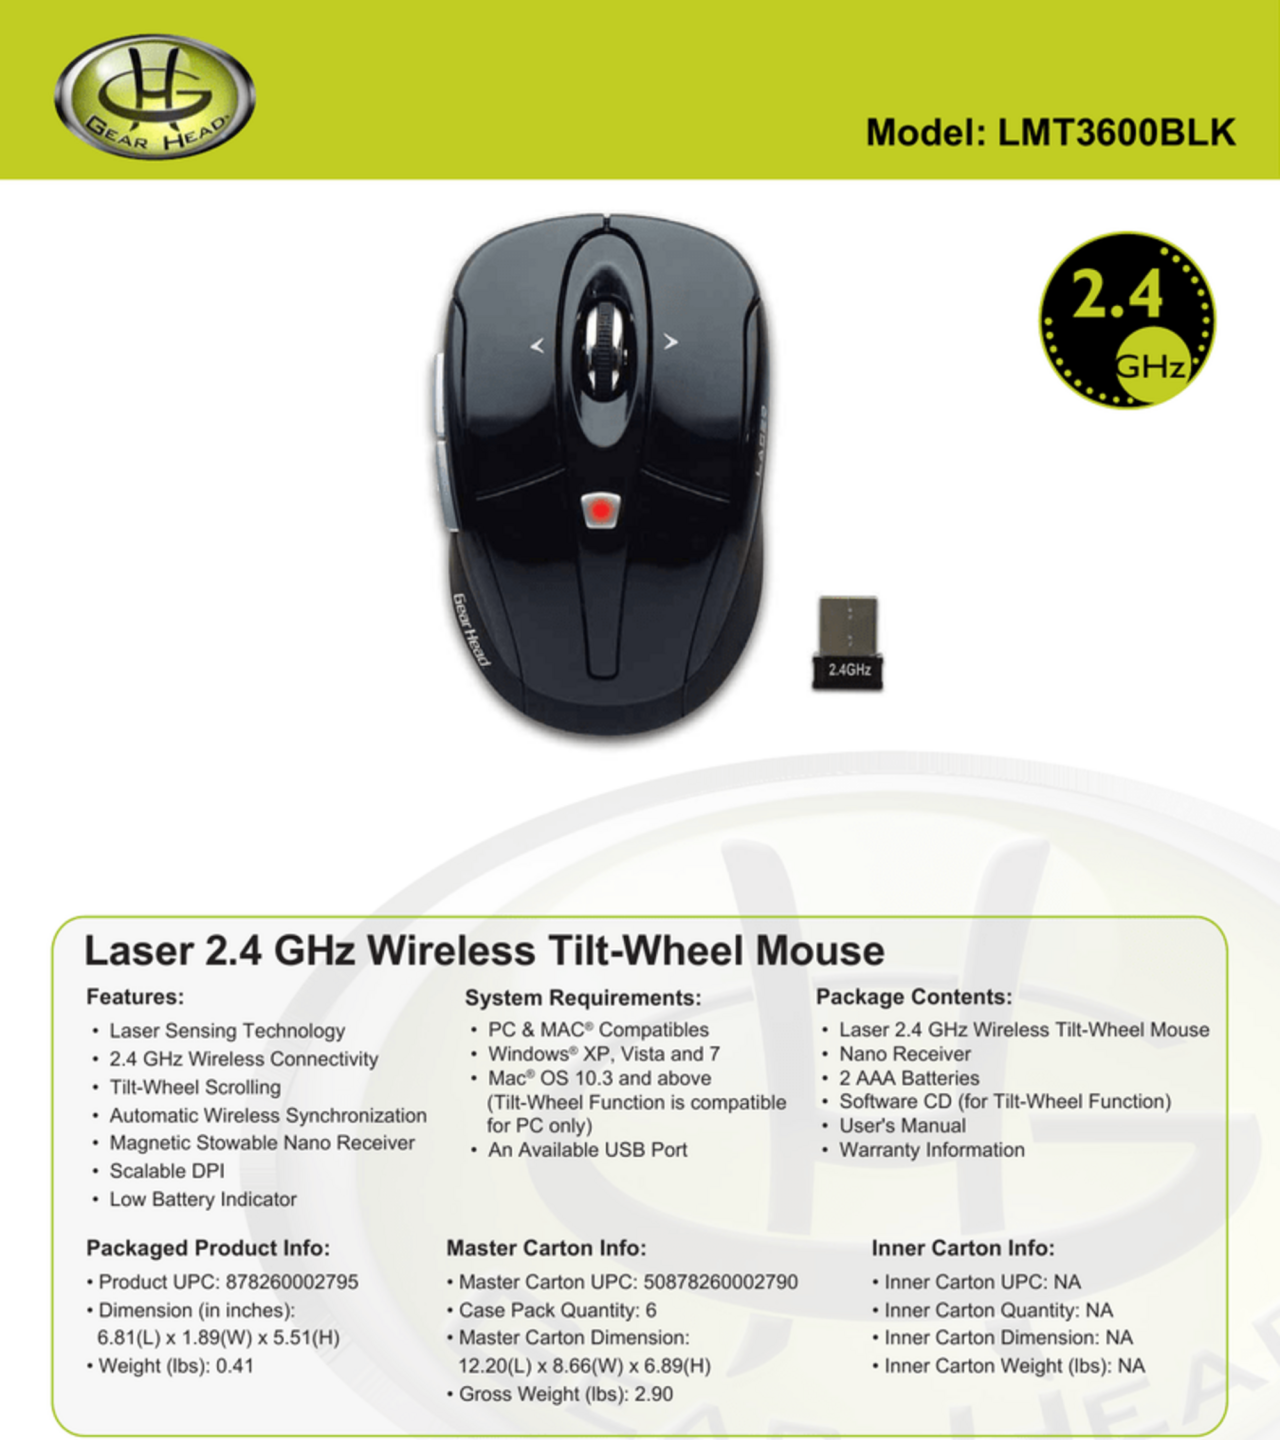 Gear Head LMT3600BLK Laser Wireless Mouse - 2.4 GHz, Tilt-Wheel, Black